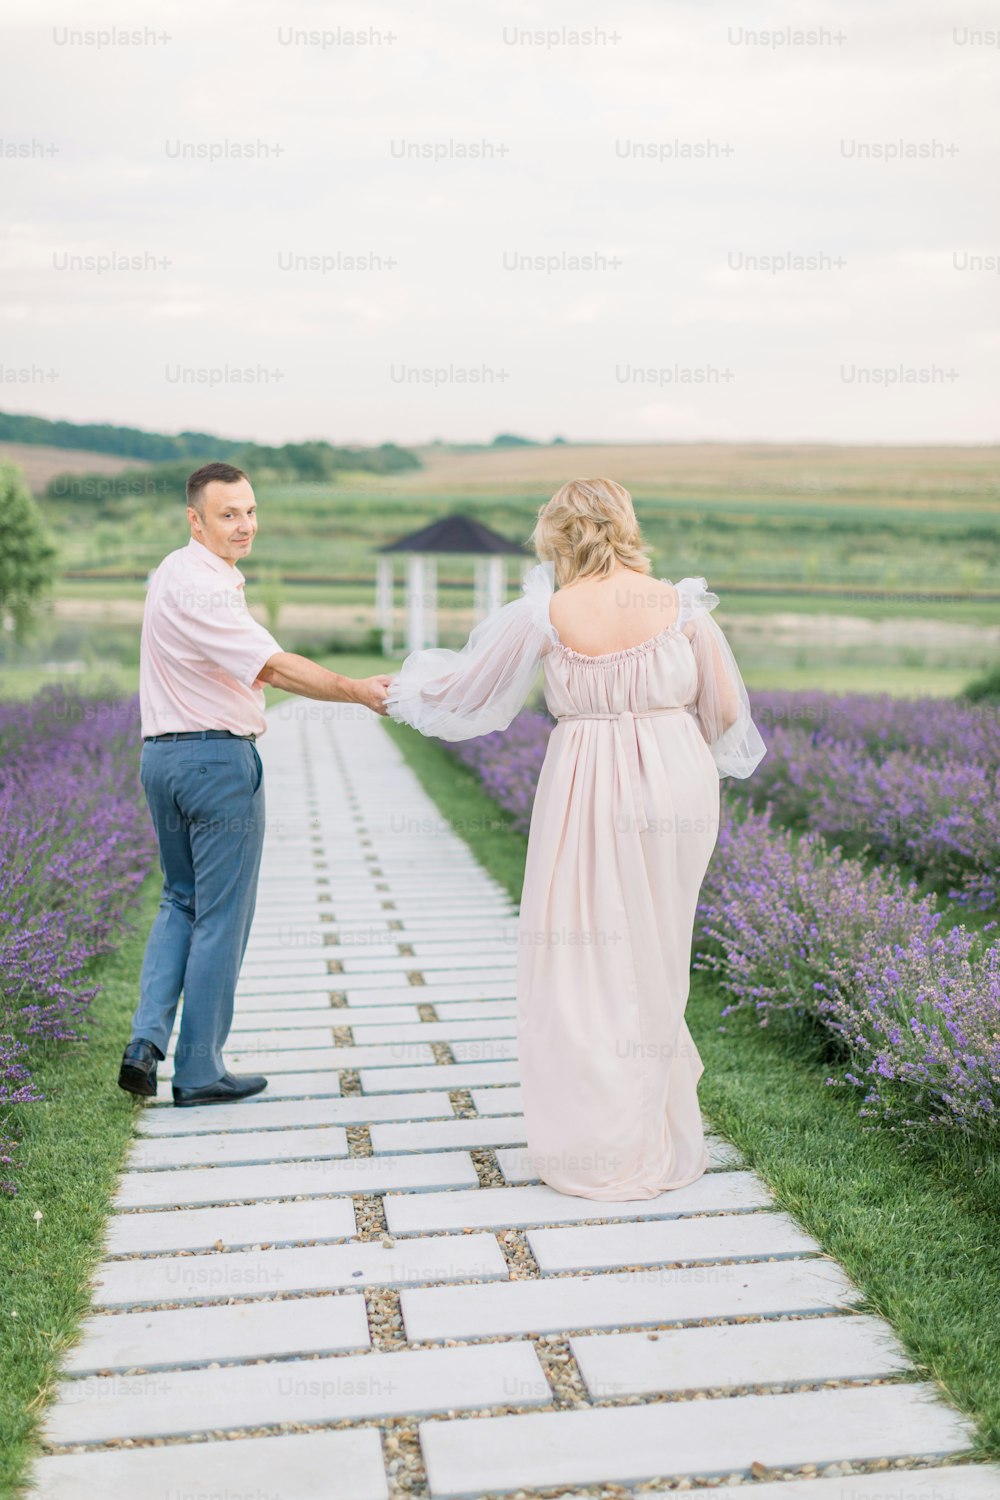 꽃이 만발한 라벤더 밭을 지나 길을 걷고, 손을 잡고, 함께 순간을 즐기는 사랑에 빠진 행복한 낭만적인 성숙한 커플의 야외 사진